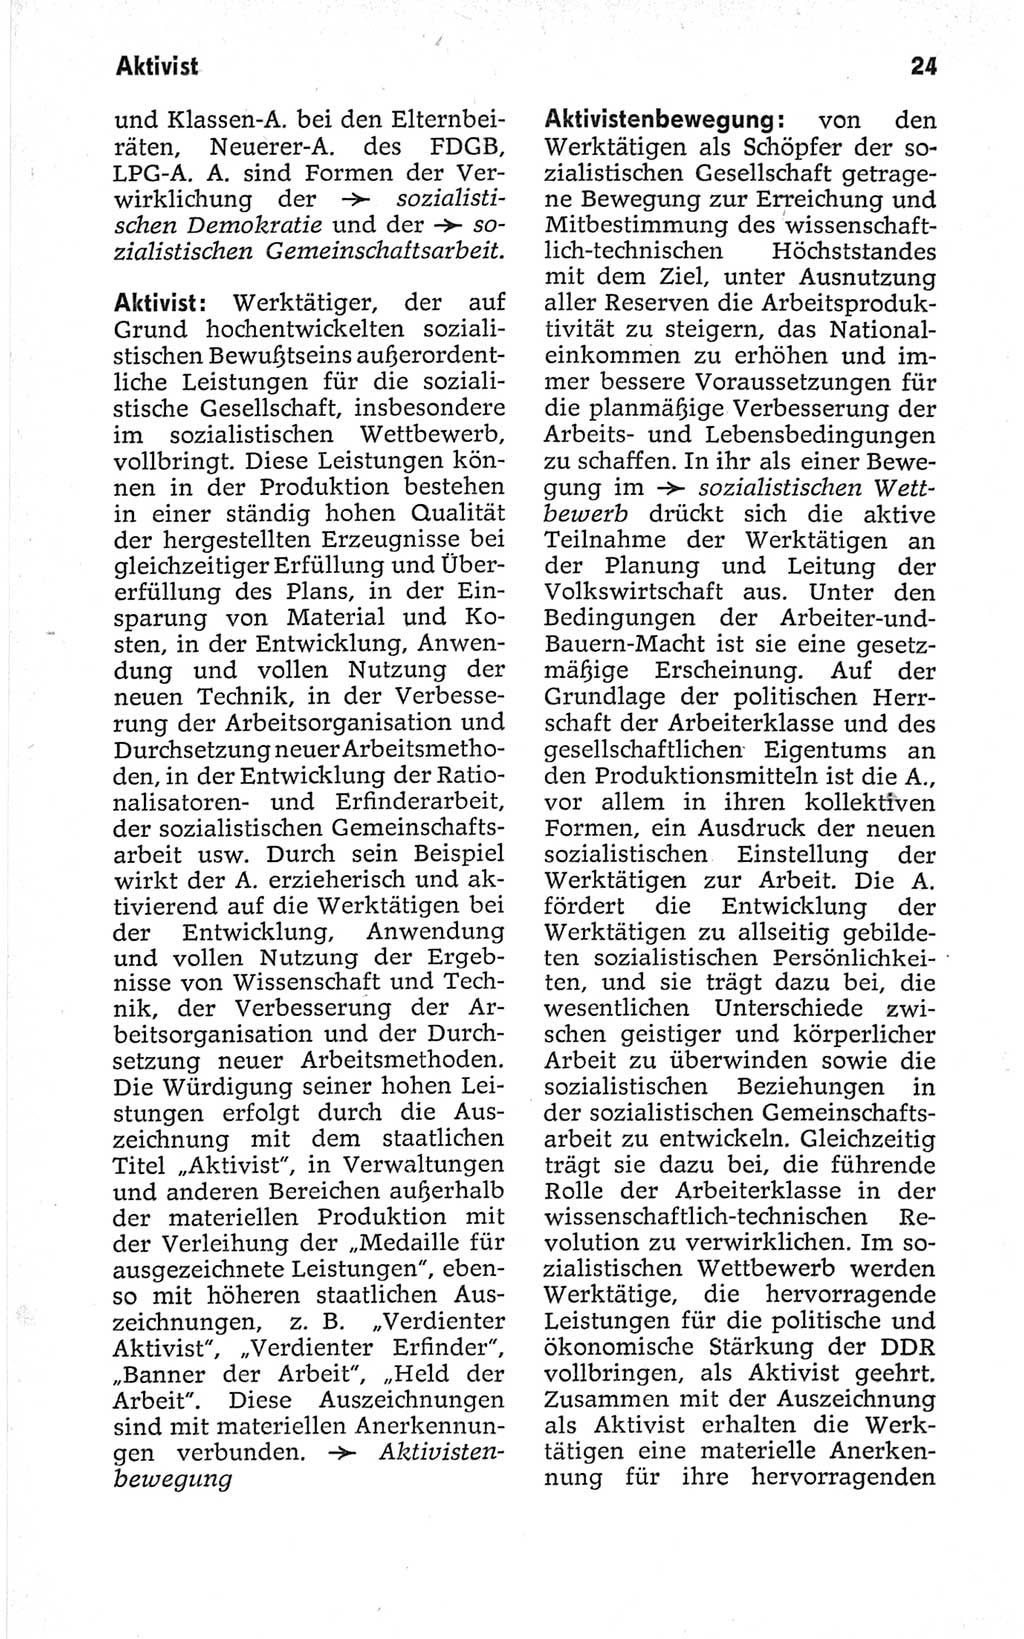 Kleines politisches Wörterbuch [Deutsche Demokratische Republik (DDR)] 1967, Seite 24 (Kl. pol. Wb. DDR 1967, S. 24)